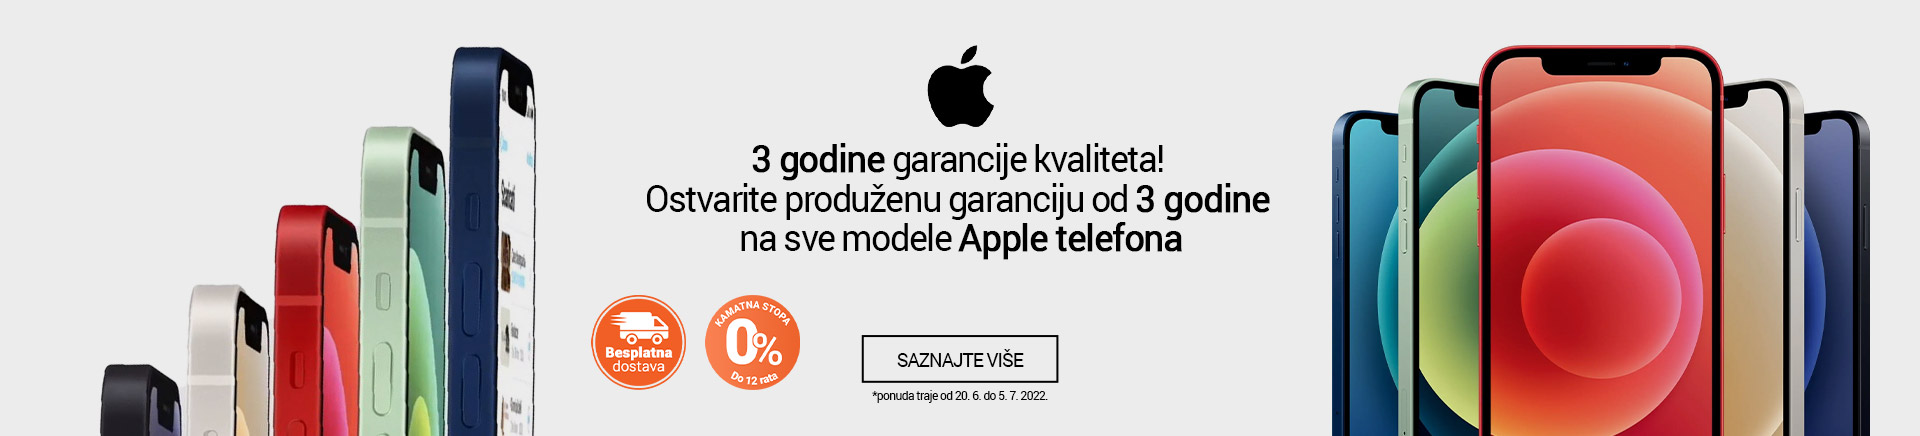 RS~Ostvarite produzenu garanciju od 3 godine na sve modele Apple telefona MOBILE 380 X 436.jpg